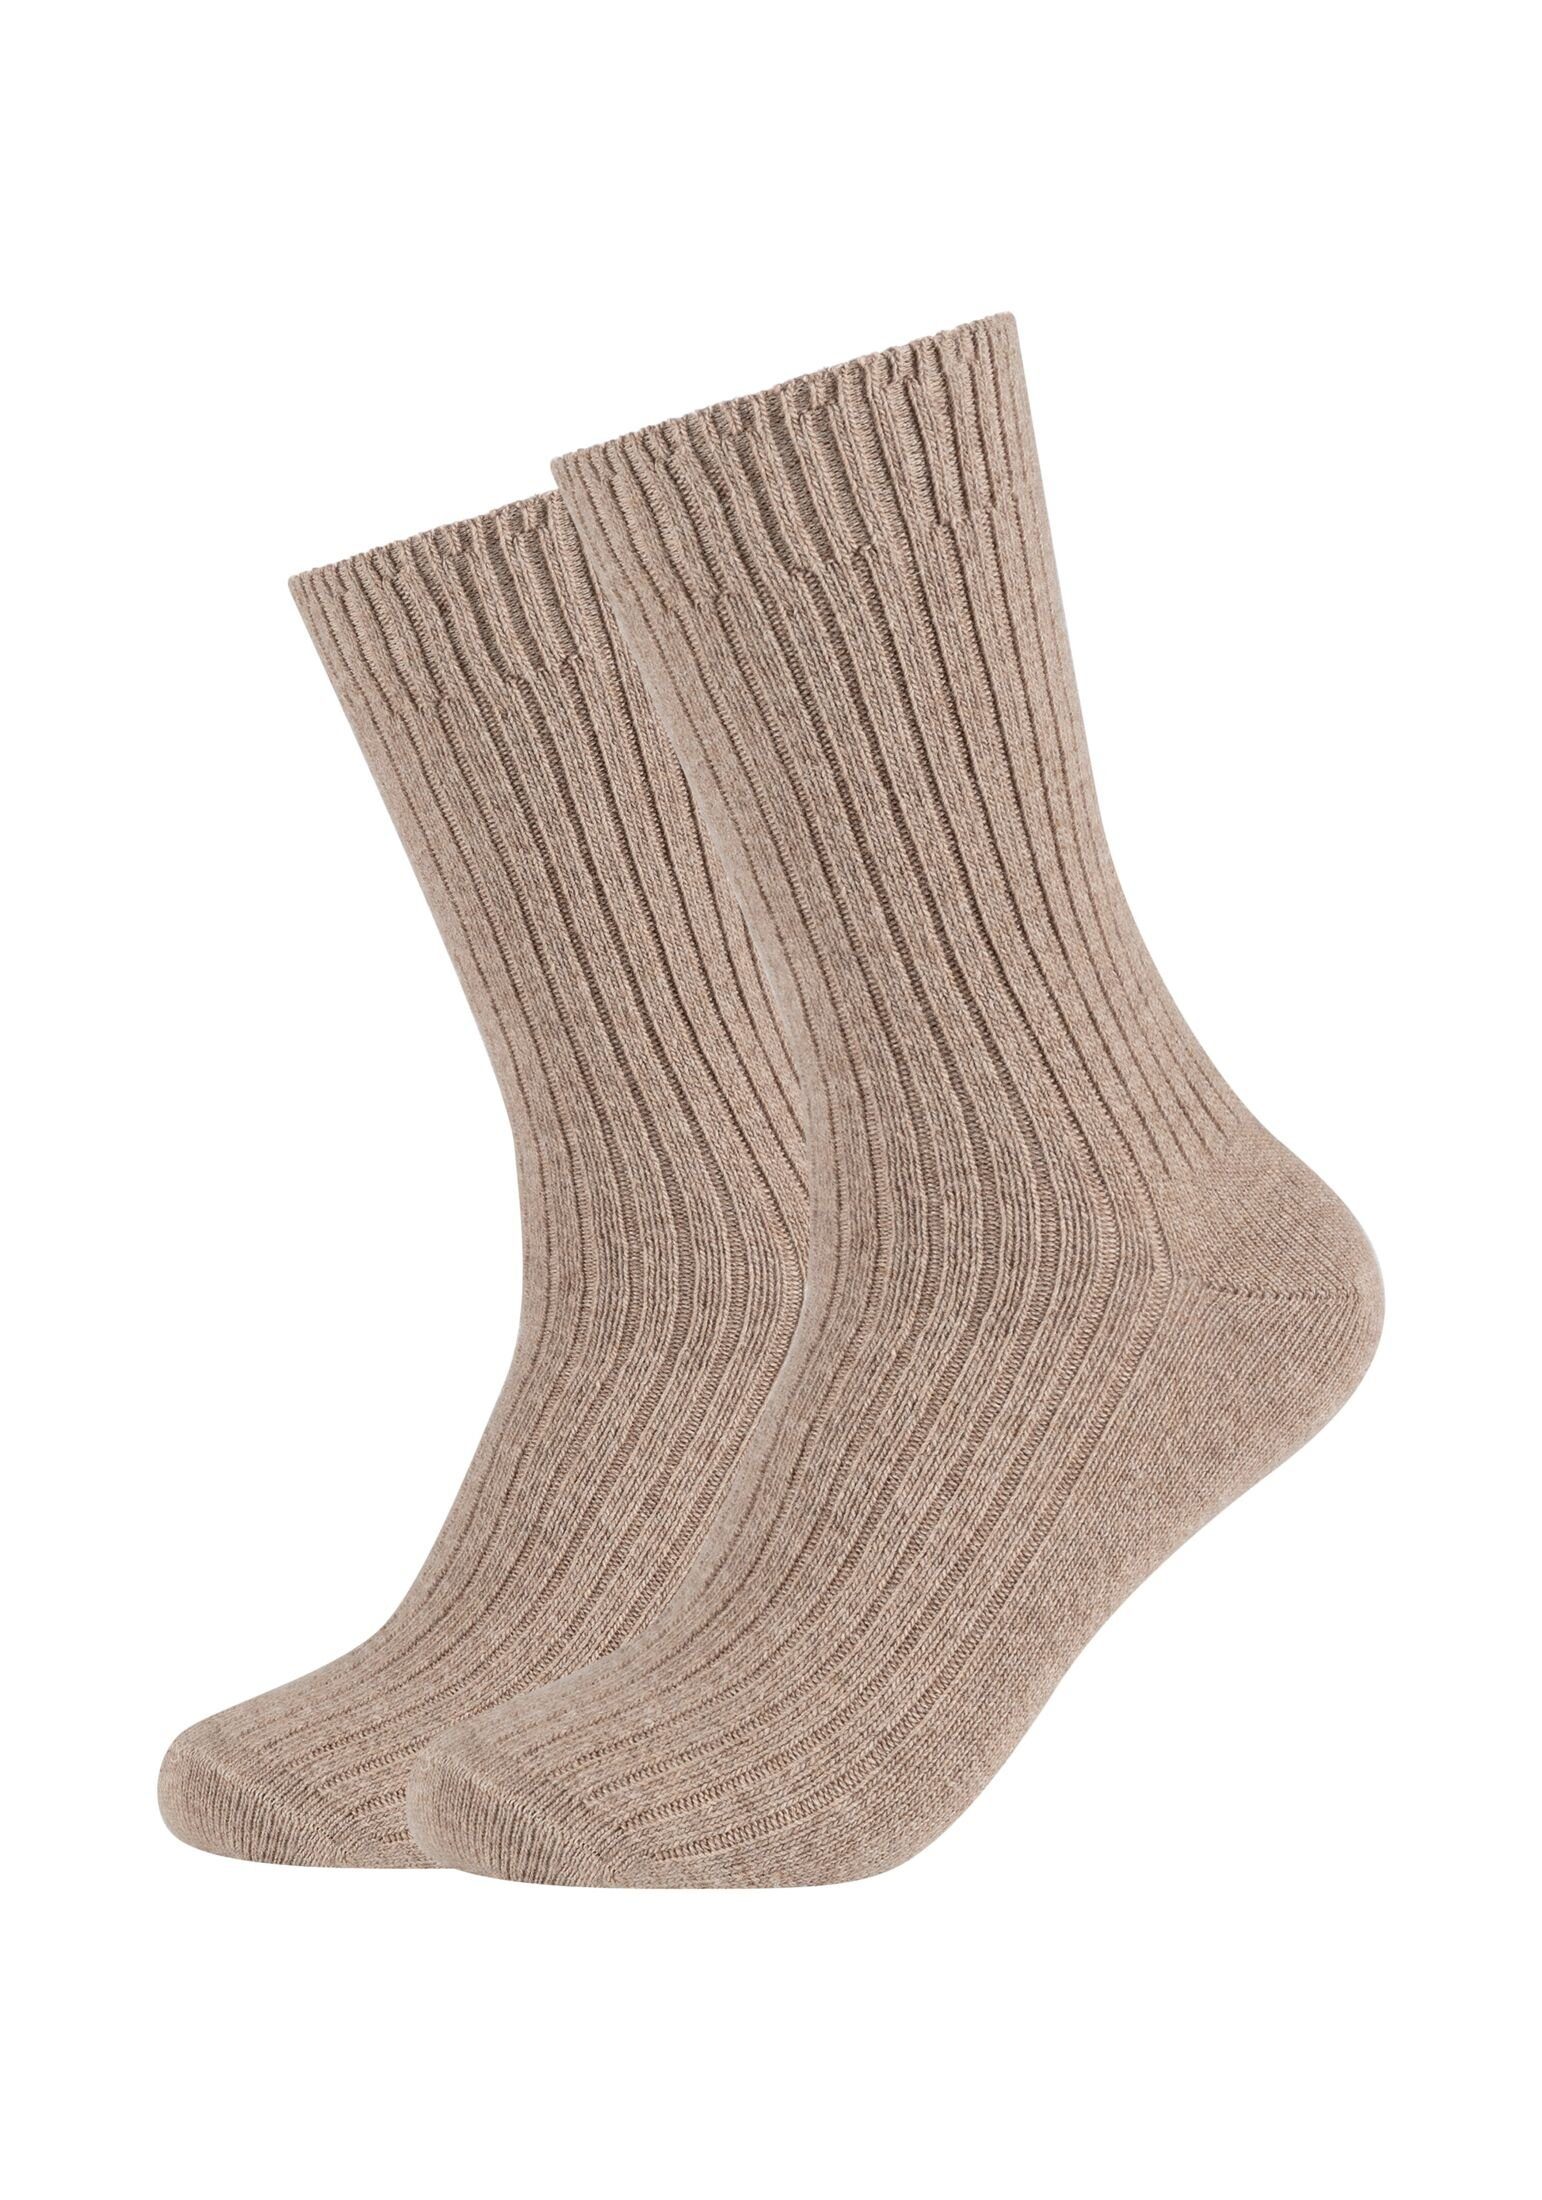 s.Oliver Socken Socken 2er Pack sand melange | Lange Socken